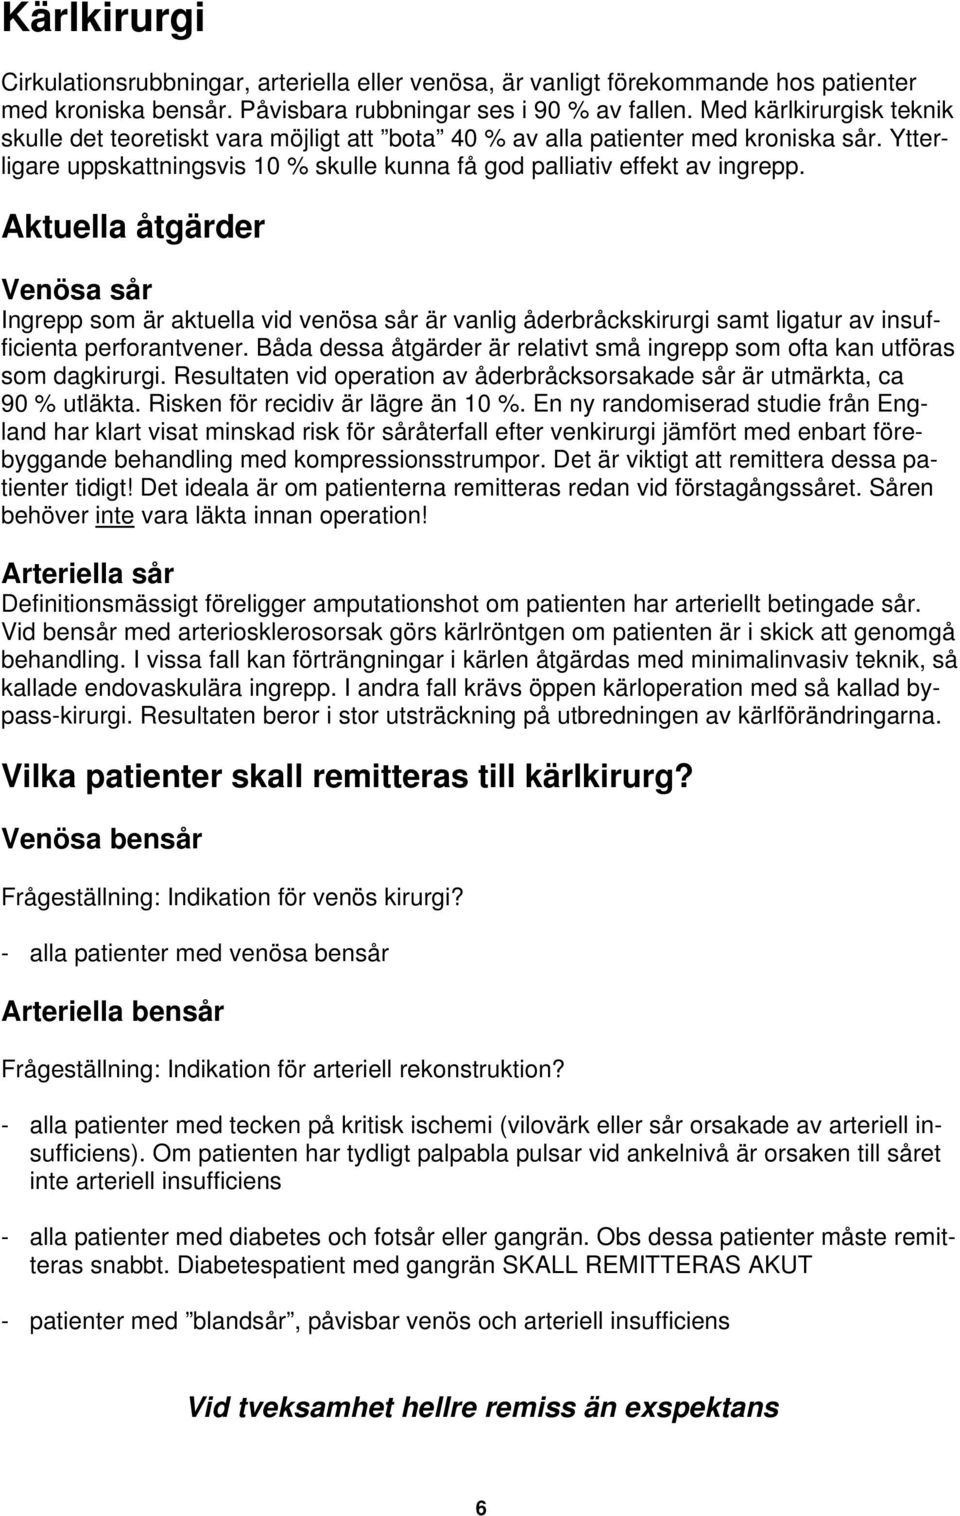 Aktuella åtgärder Venösa sår Ingrepp som är aktuella vid venösa sår är vanlig åderbråckskirurgi samt ligatur av insufficienta perforantvener.